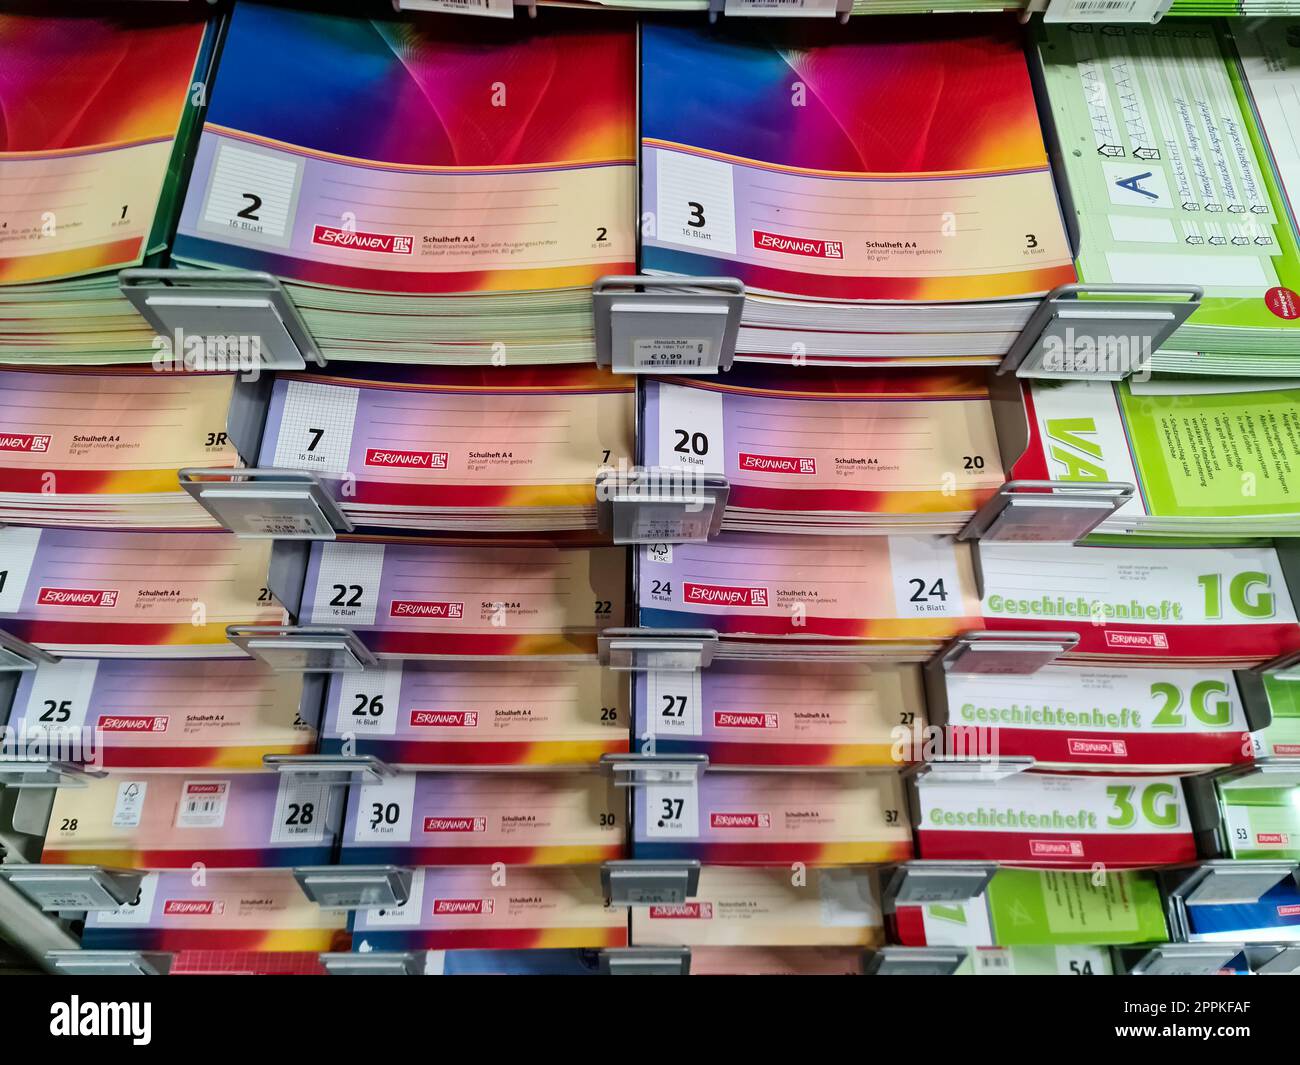 Kiel, Allemagne - 11 février 2023 : une pile de cahiers colorés de la marque Brunnen dans un supermarché. Banque D'Images